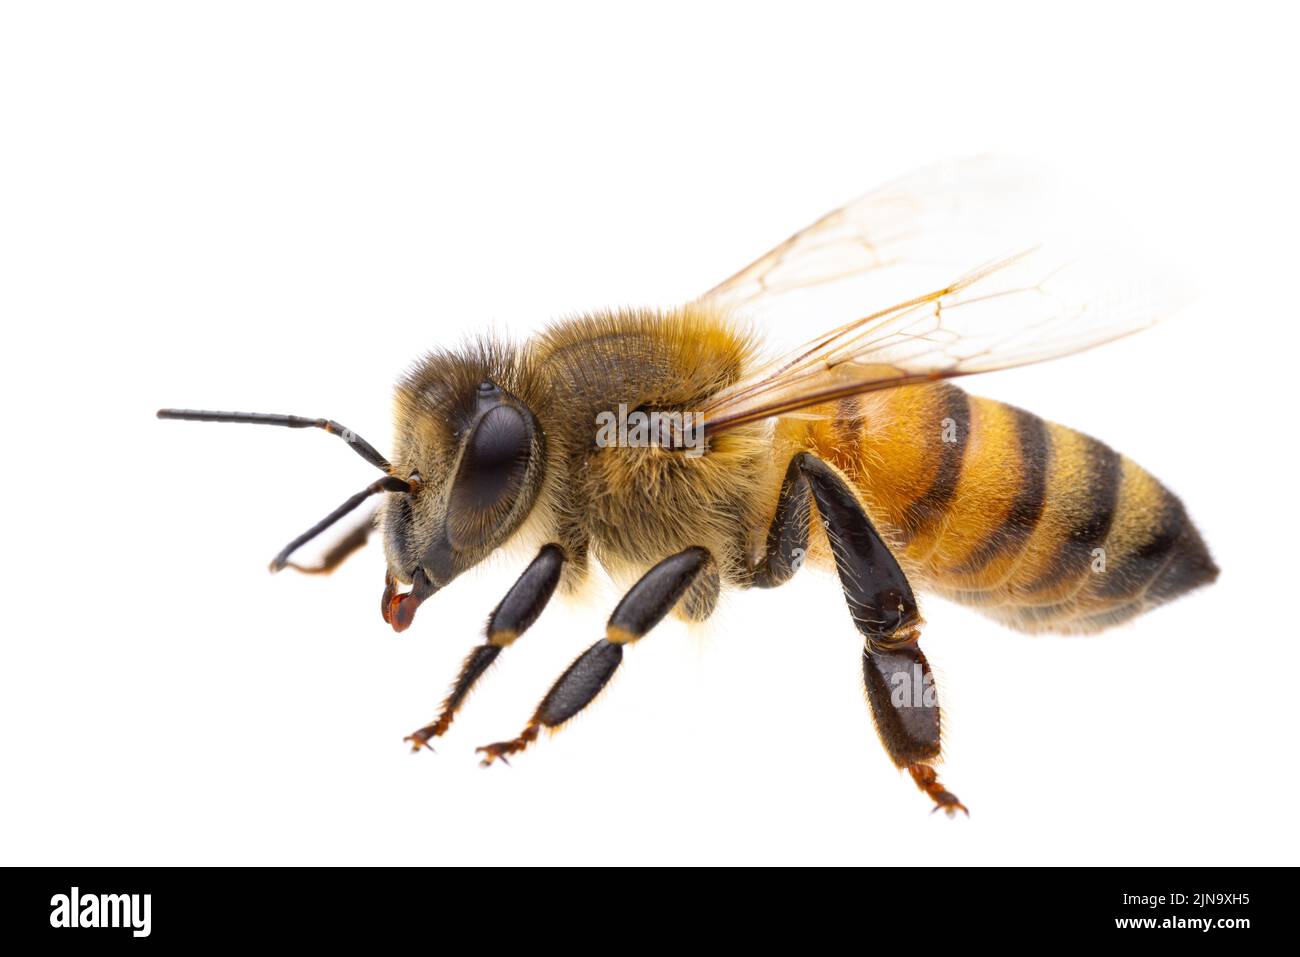 Insetti d'europa - api: Vista laterale macro di api mellifera europee ( Apis mellifera) isolato su sfondo bianco - particolare della testa Foto Stock